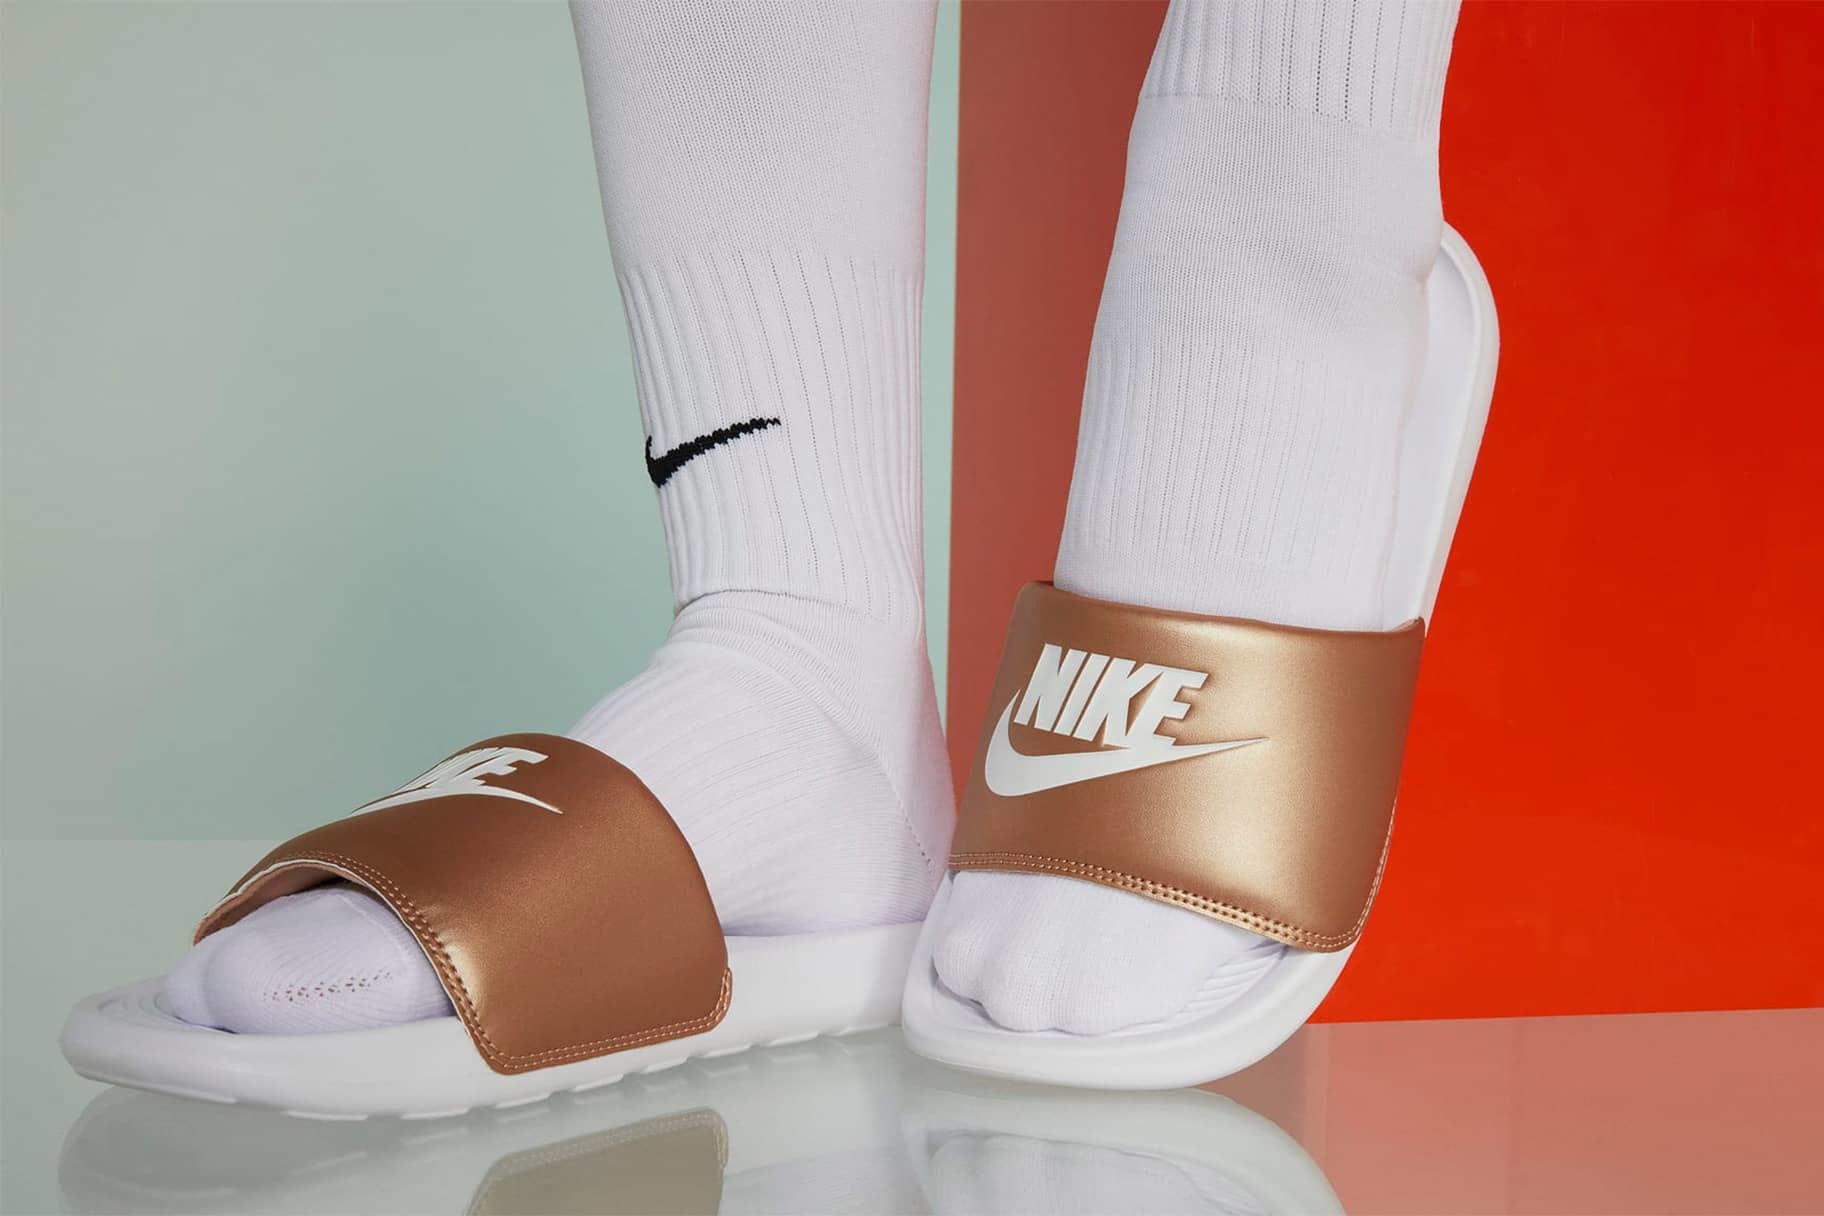 Las zapatillas Nike más cómodas para andar casa. Nike ES